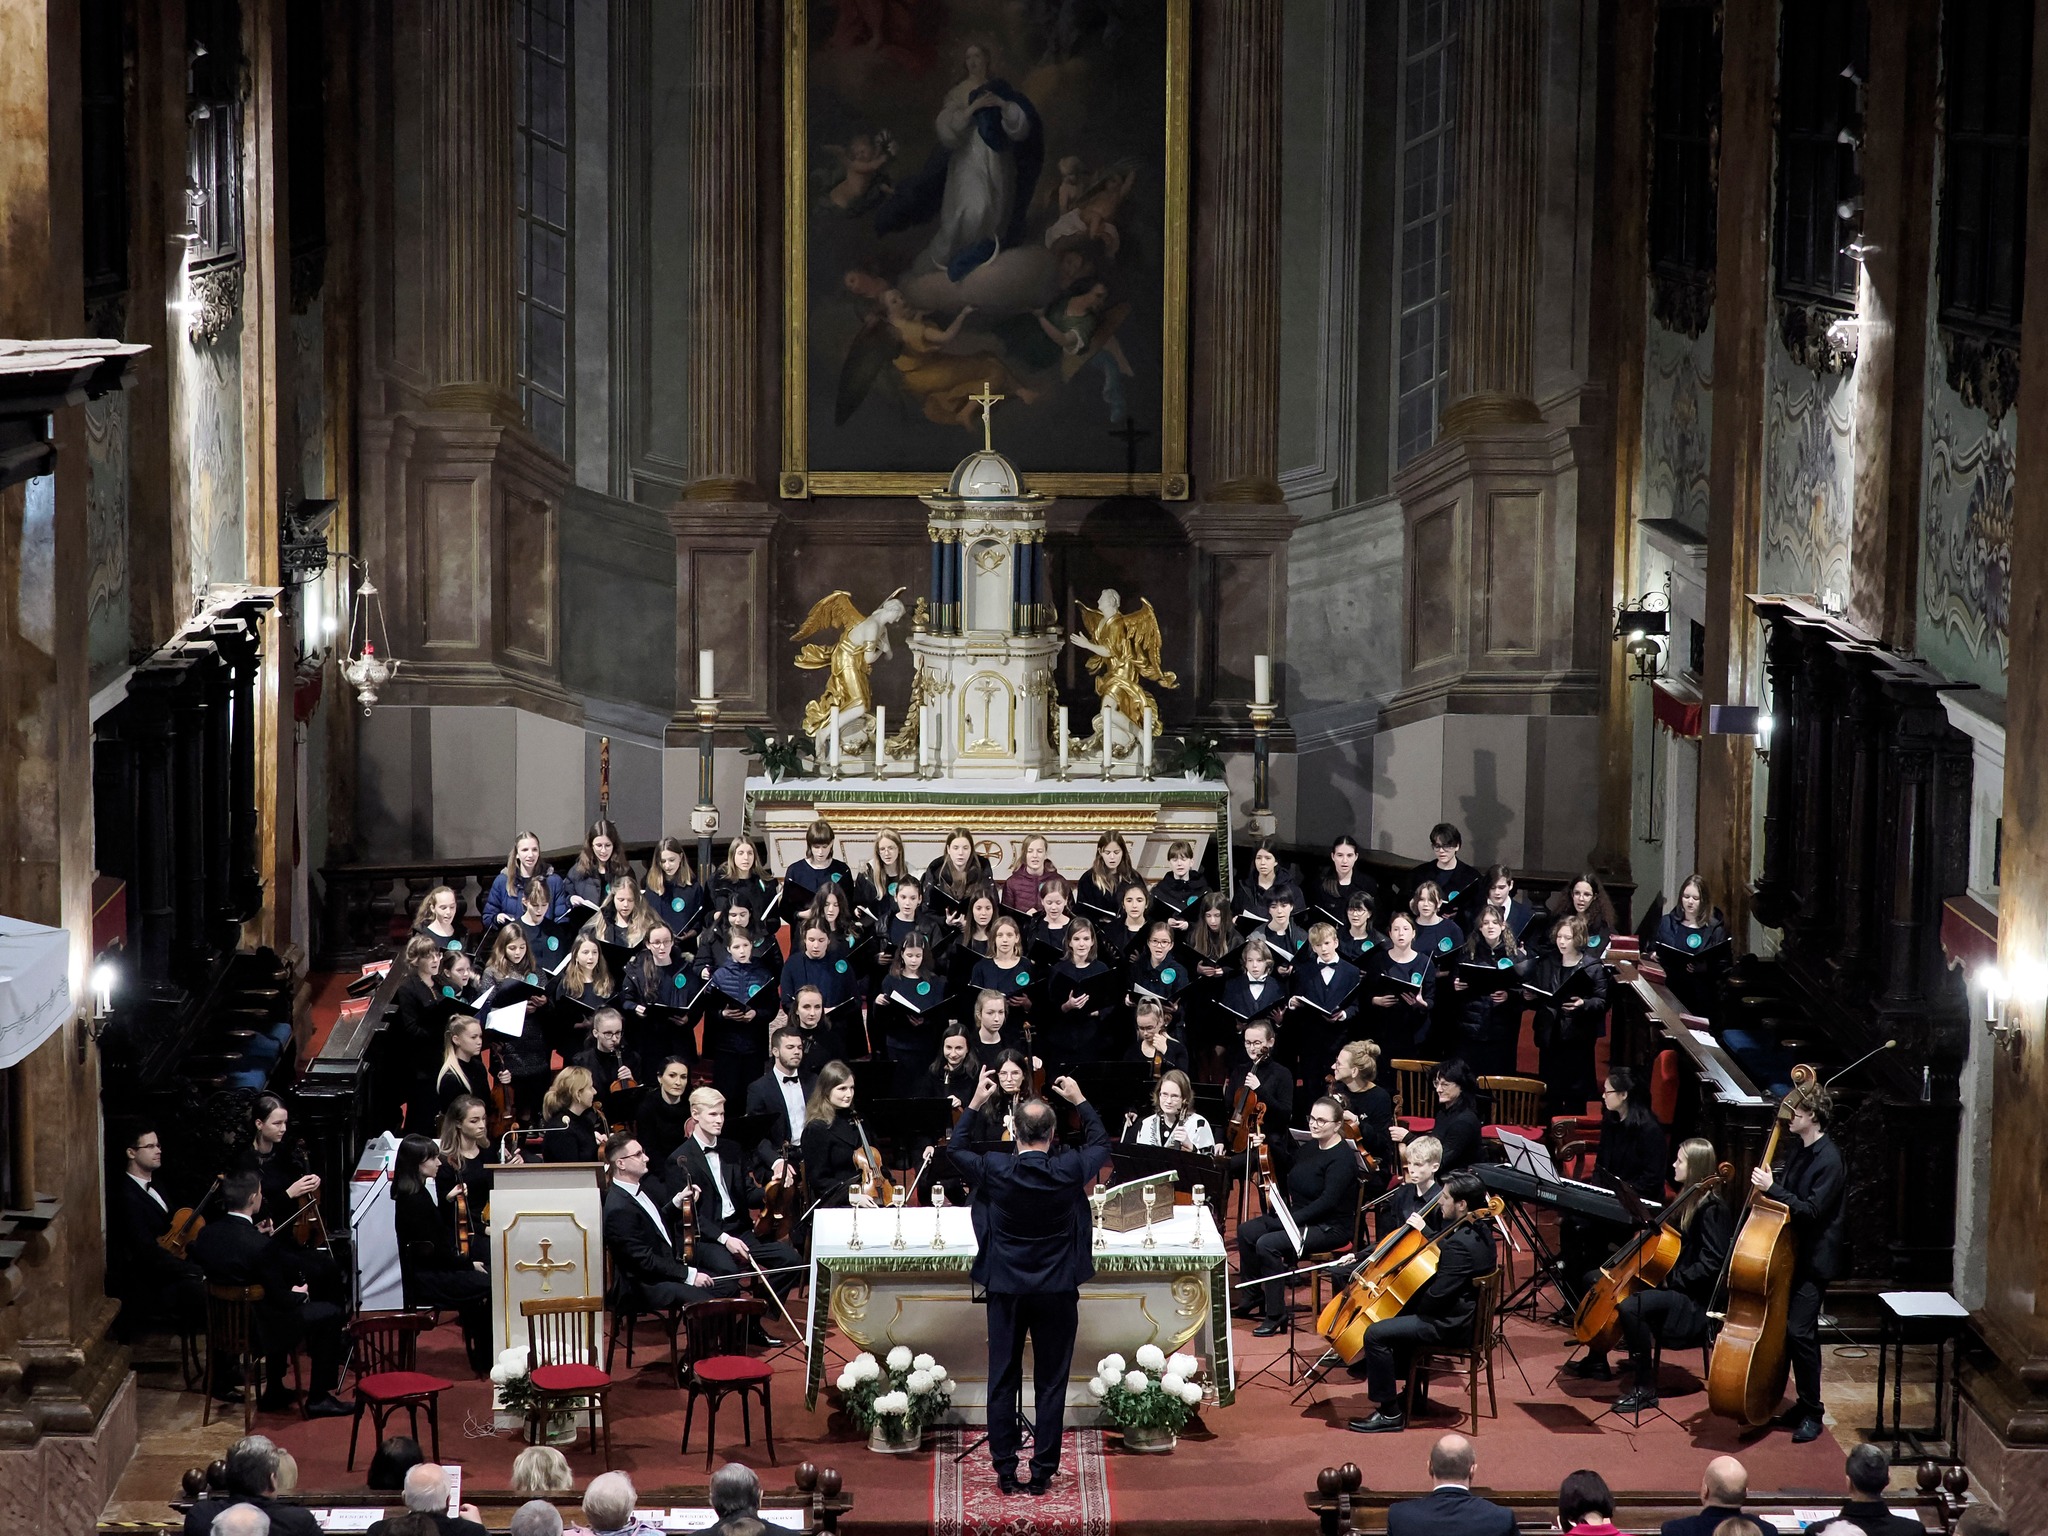 Ekumenický koncert